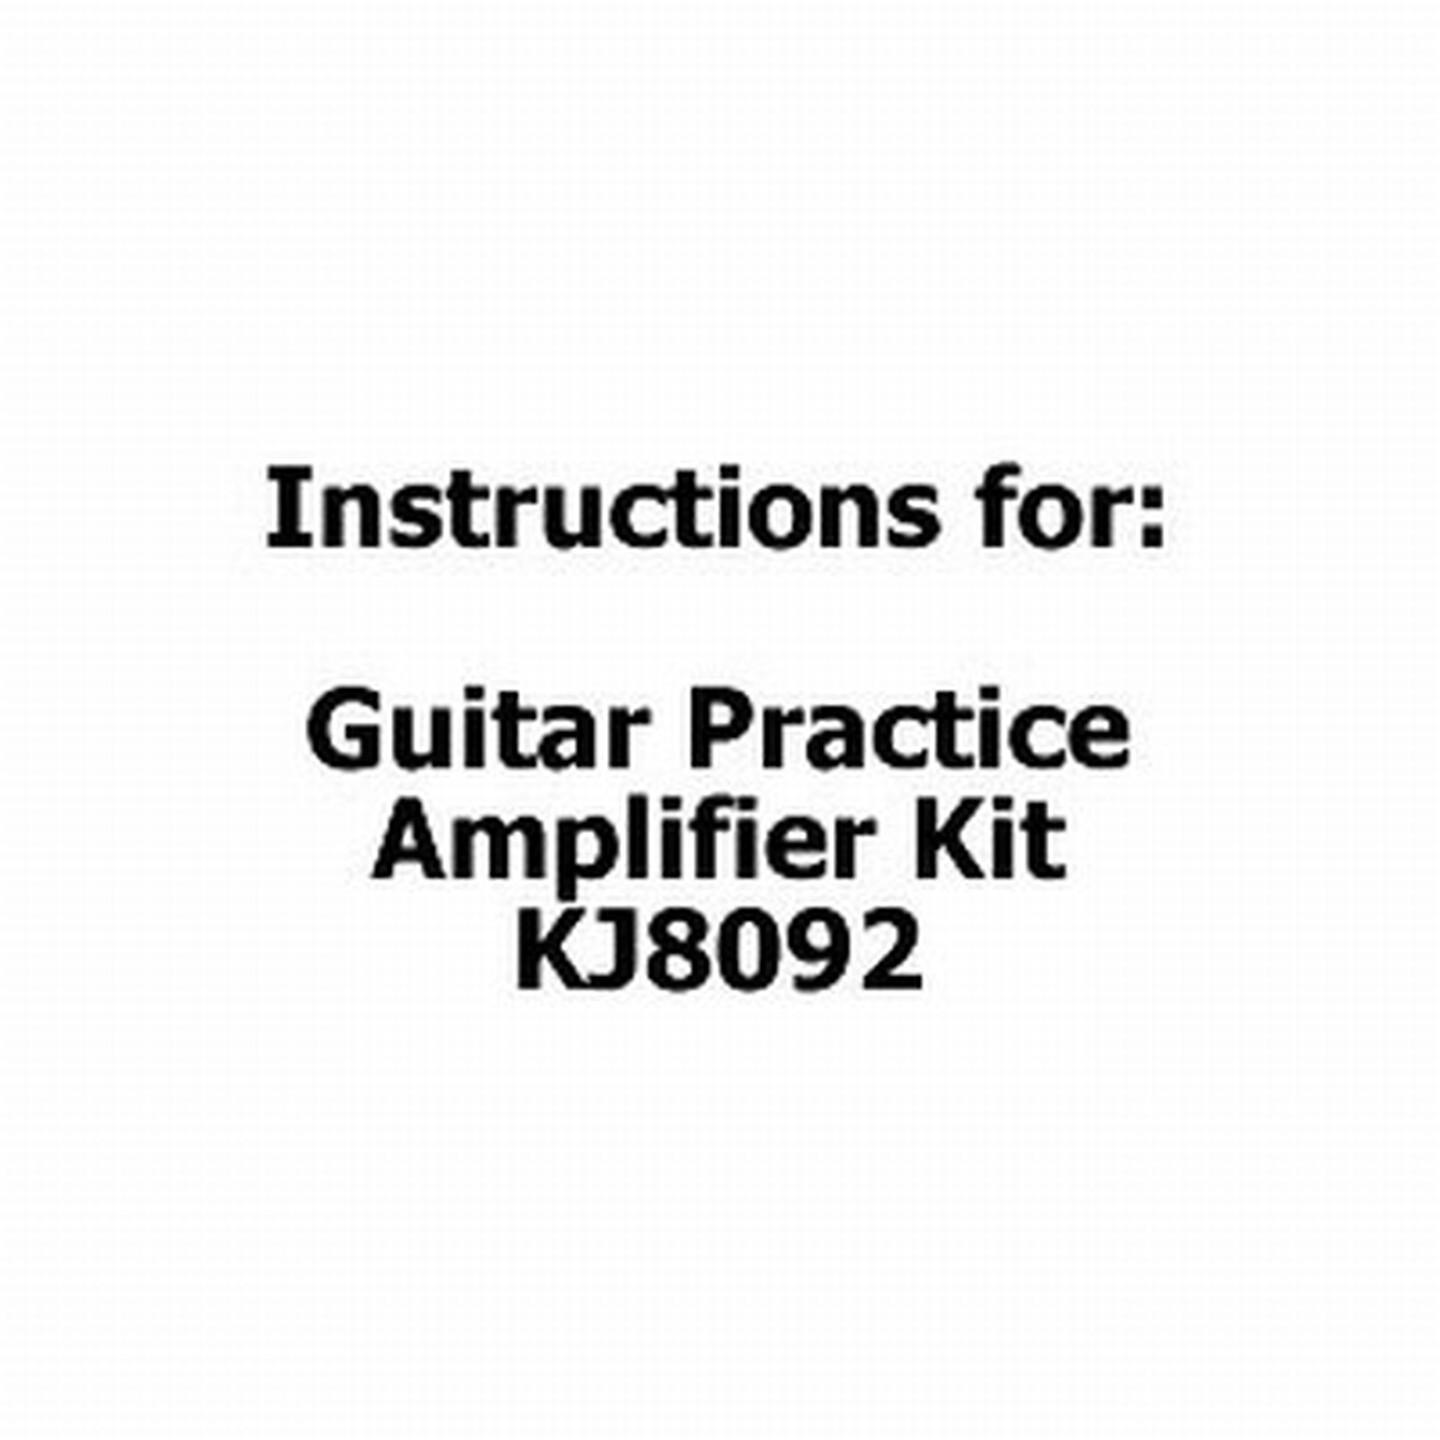 Instructions for Guitar Practice Amplifier Kit KJ8092